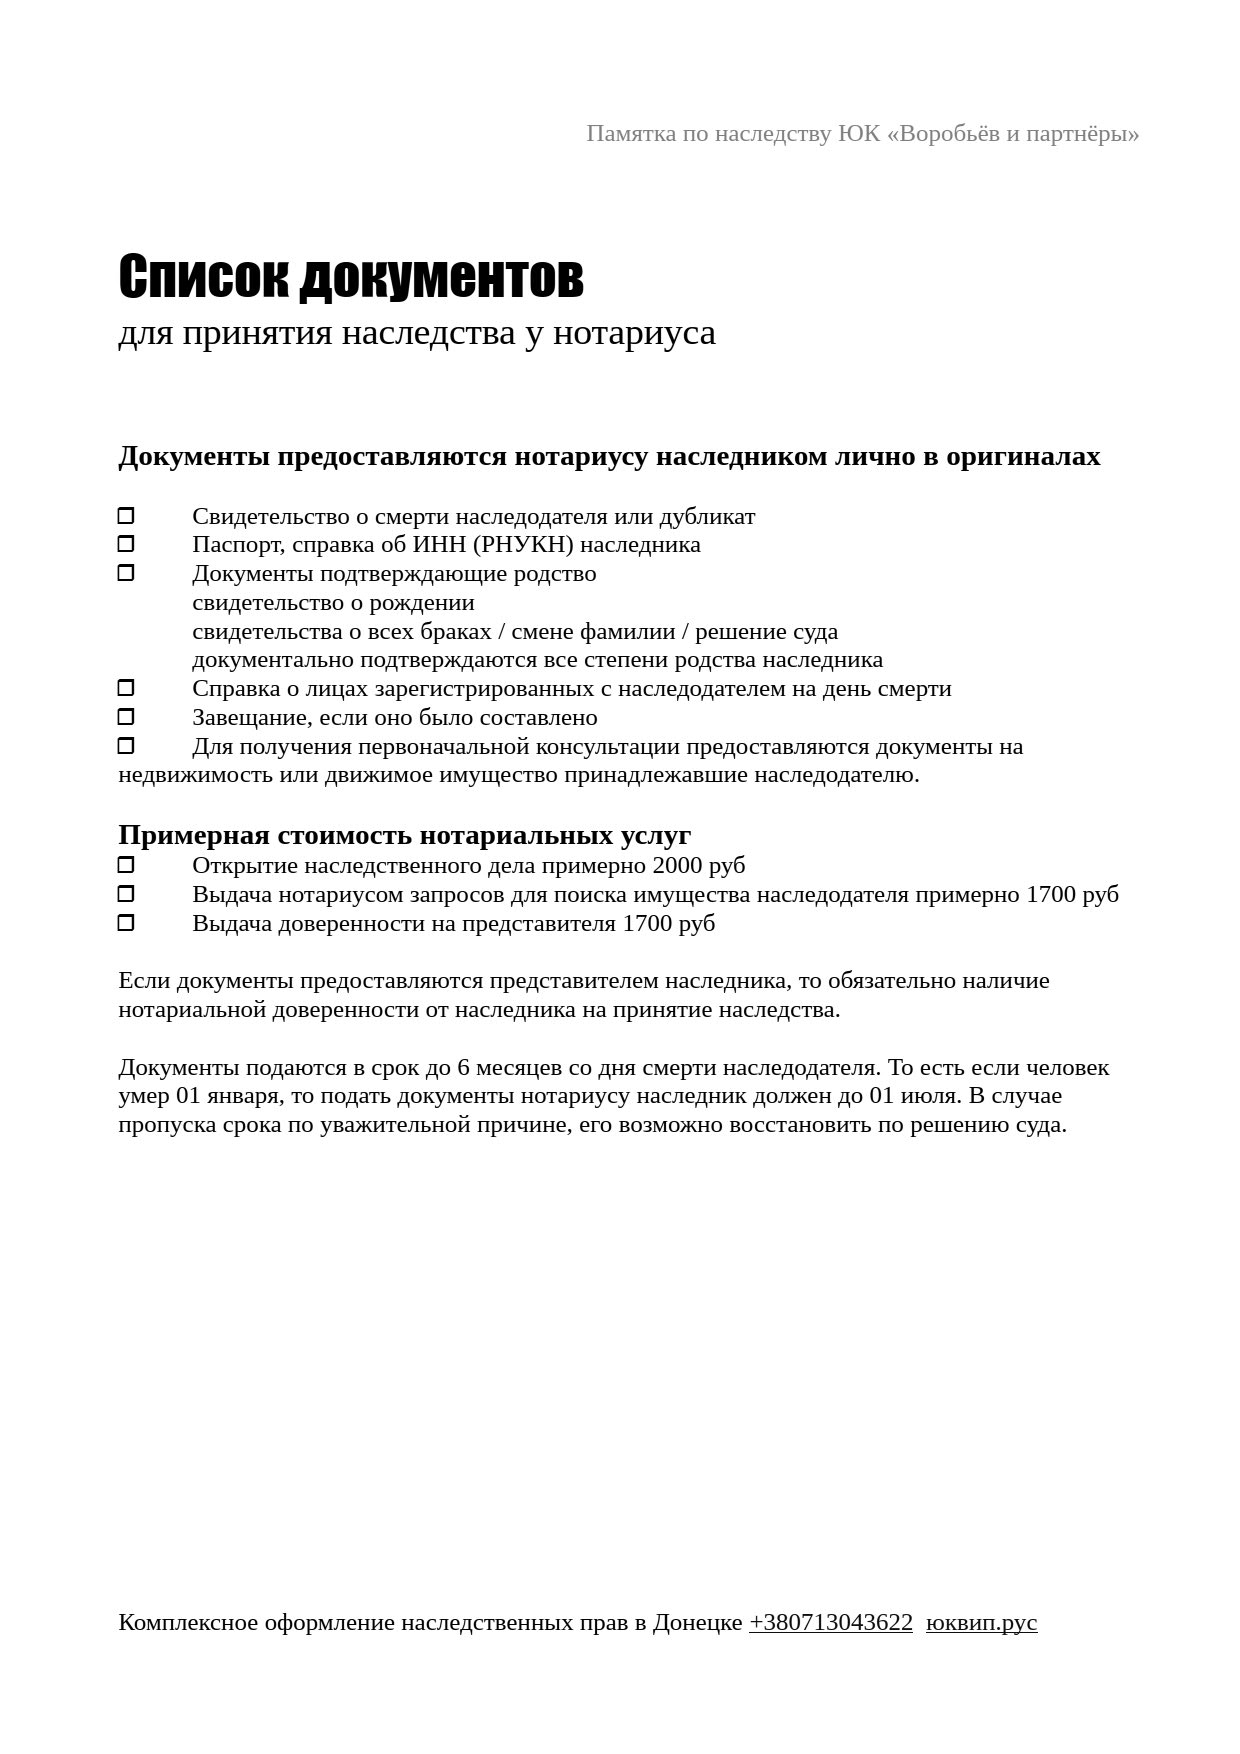 Список документов для принятия и оформления наследства от адвокатов ДНР 